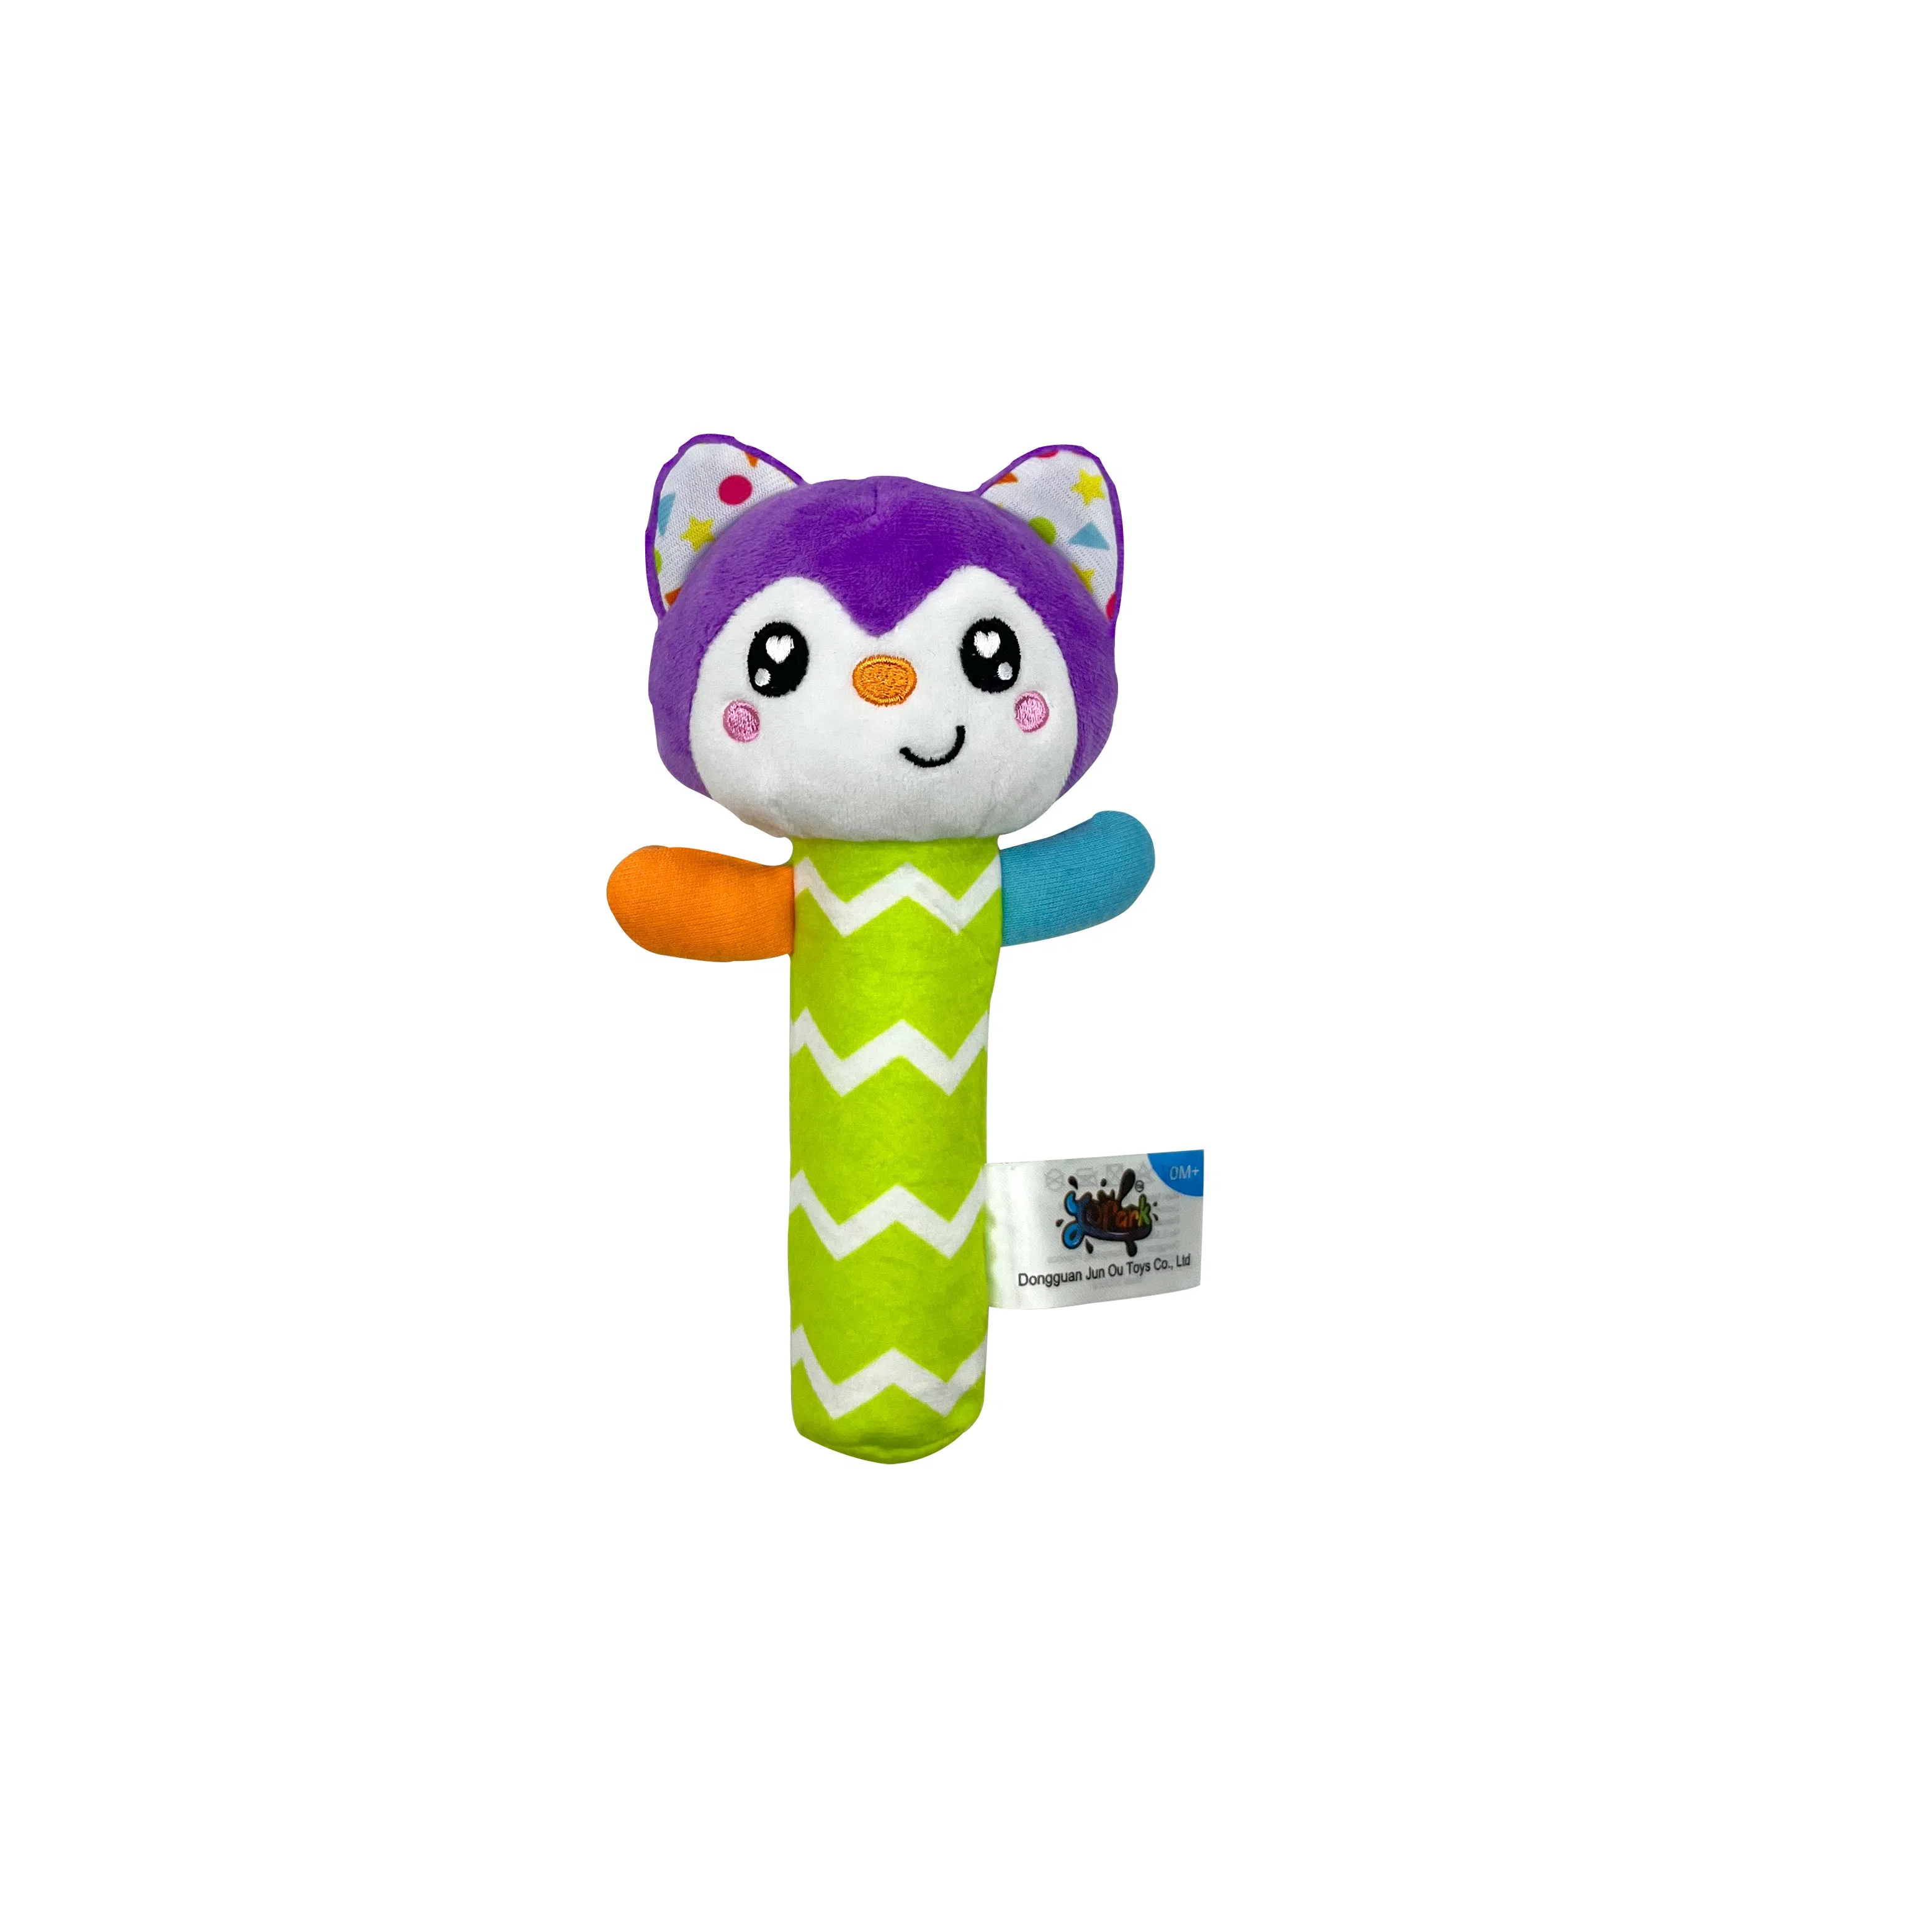 Детская игрушка плюш игрушка Squeaker Rattle Crinkle Fox персонаж Grab Визуальный сенсорный интерфейс Hear Sense ICTI ASTM для ухода за детьми Комфорт пустышки